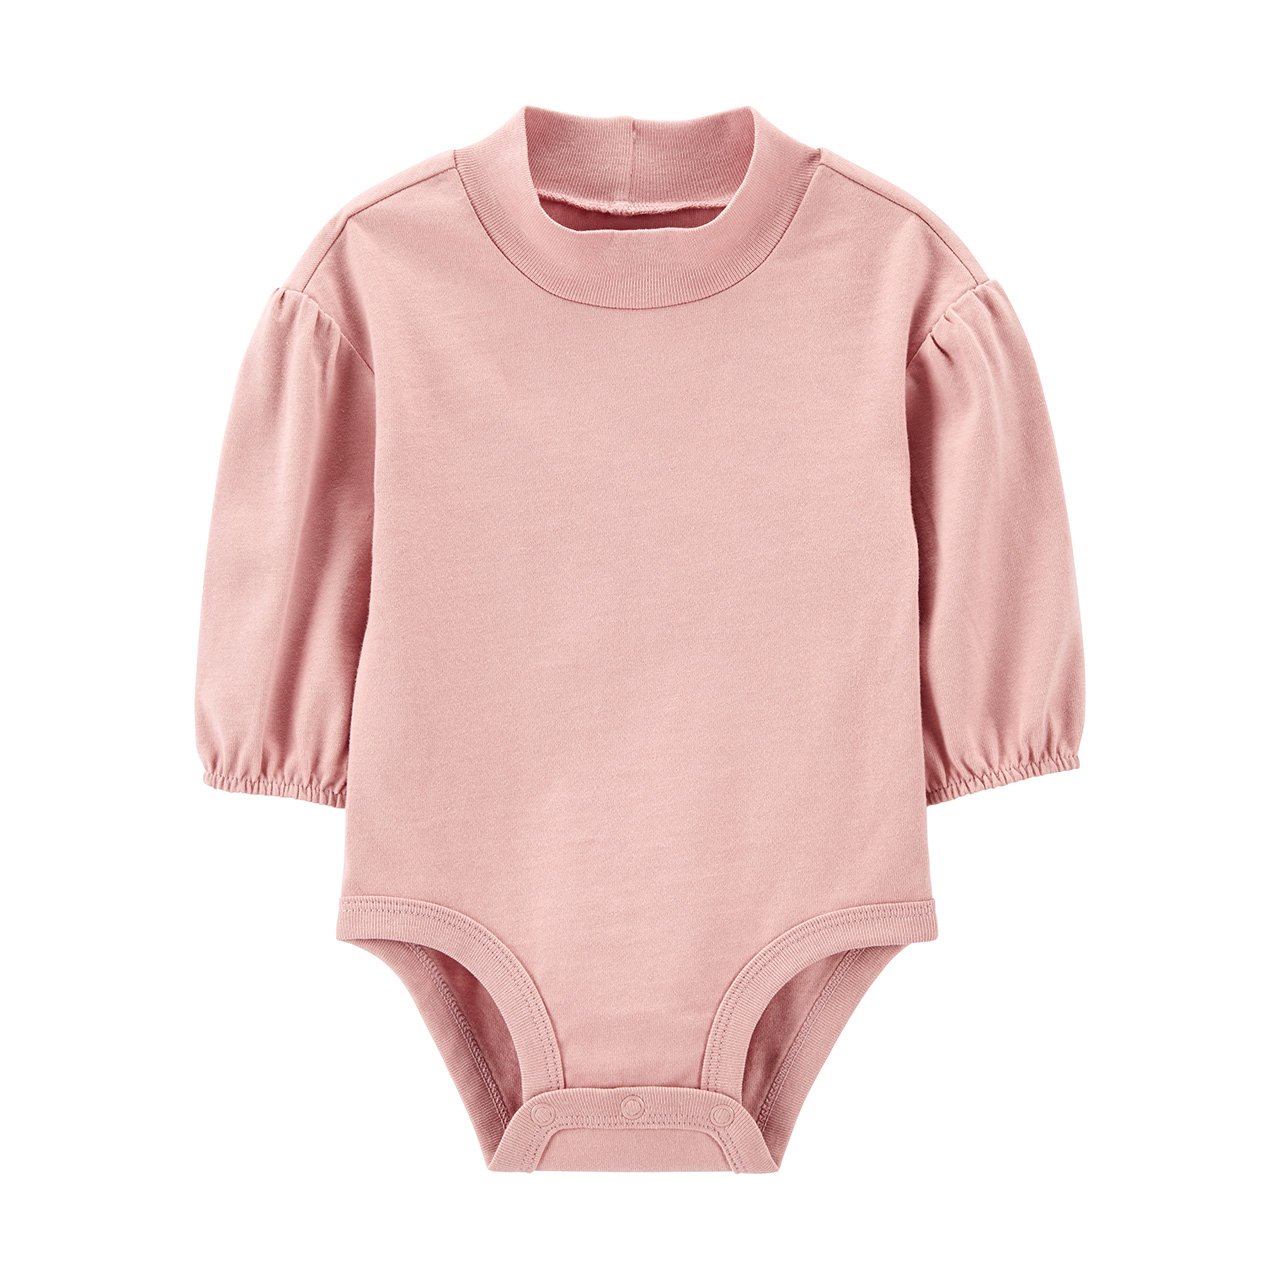 Body rosa suave para bebé.